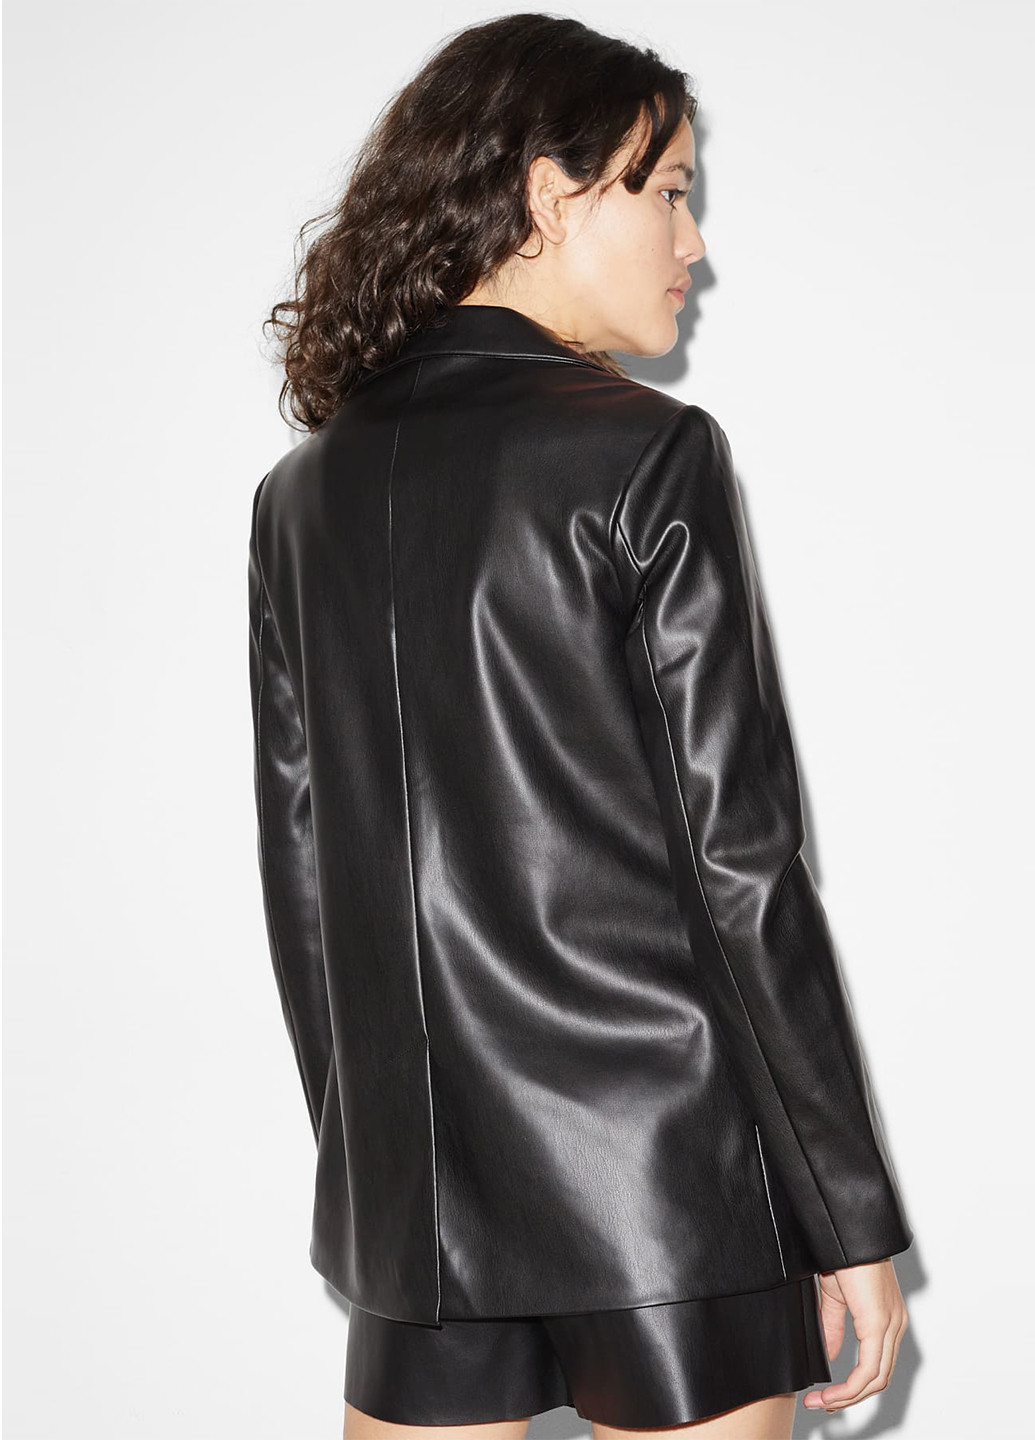 Черная демисезонная куртка куртка-пиджак C&A